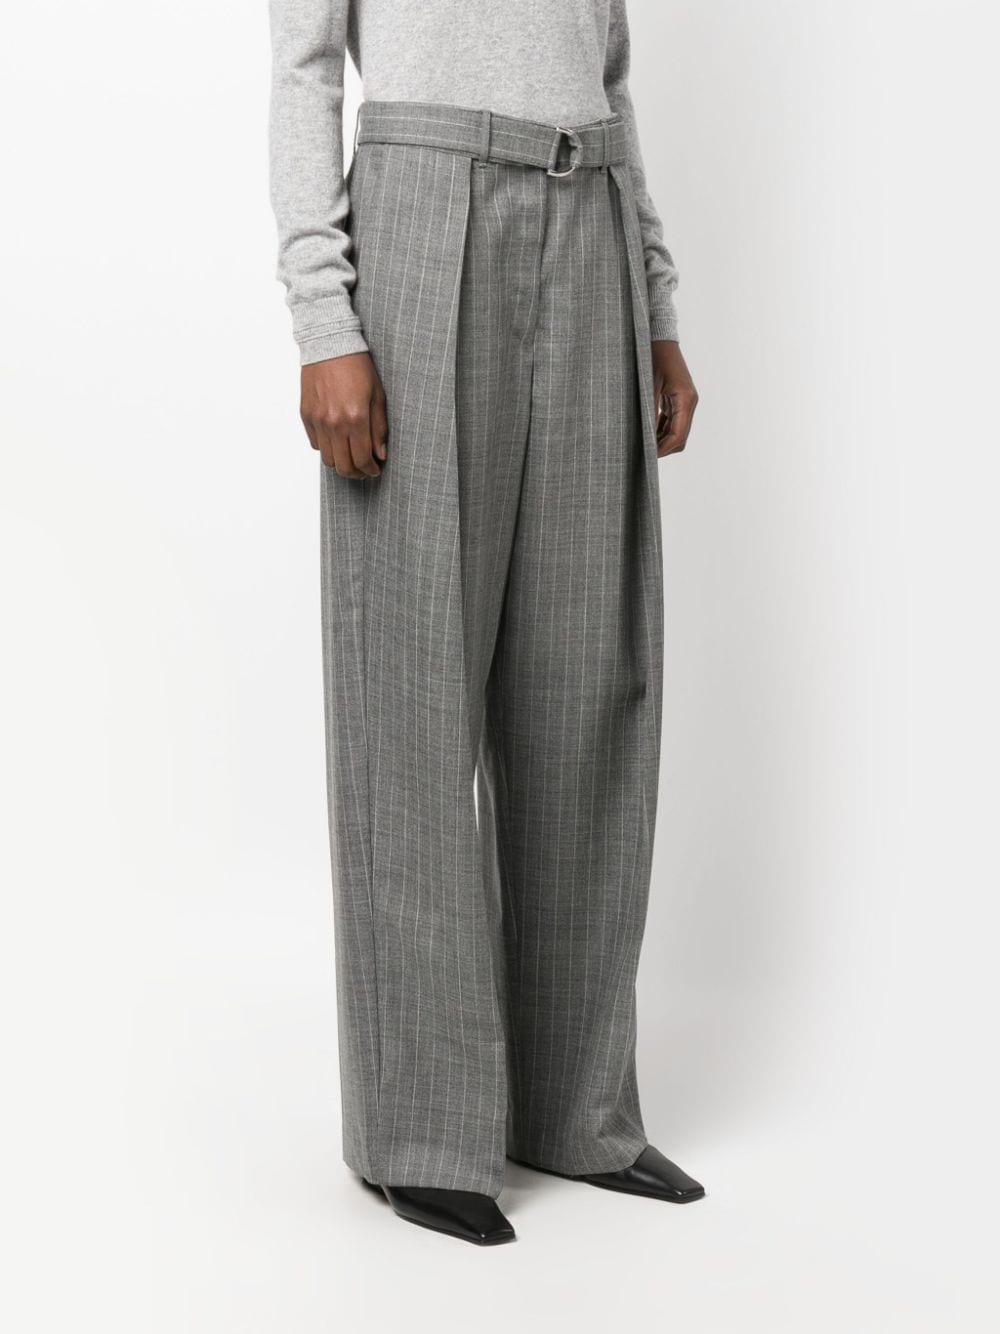 Pinstripe-Pattern Wool Trousers